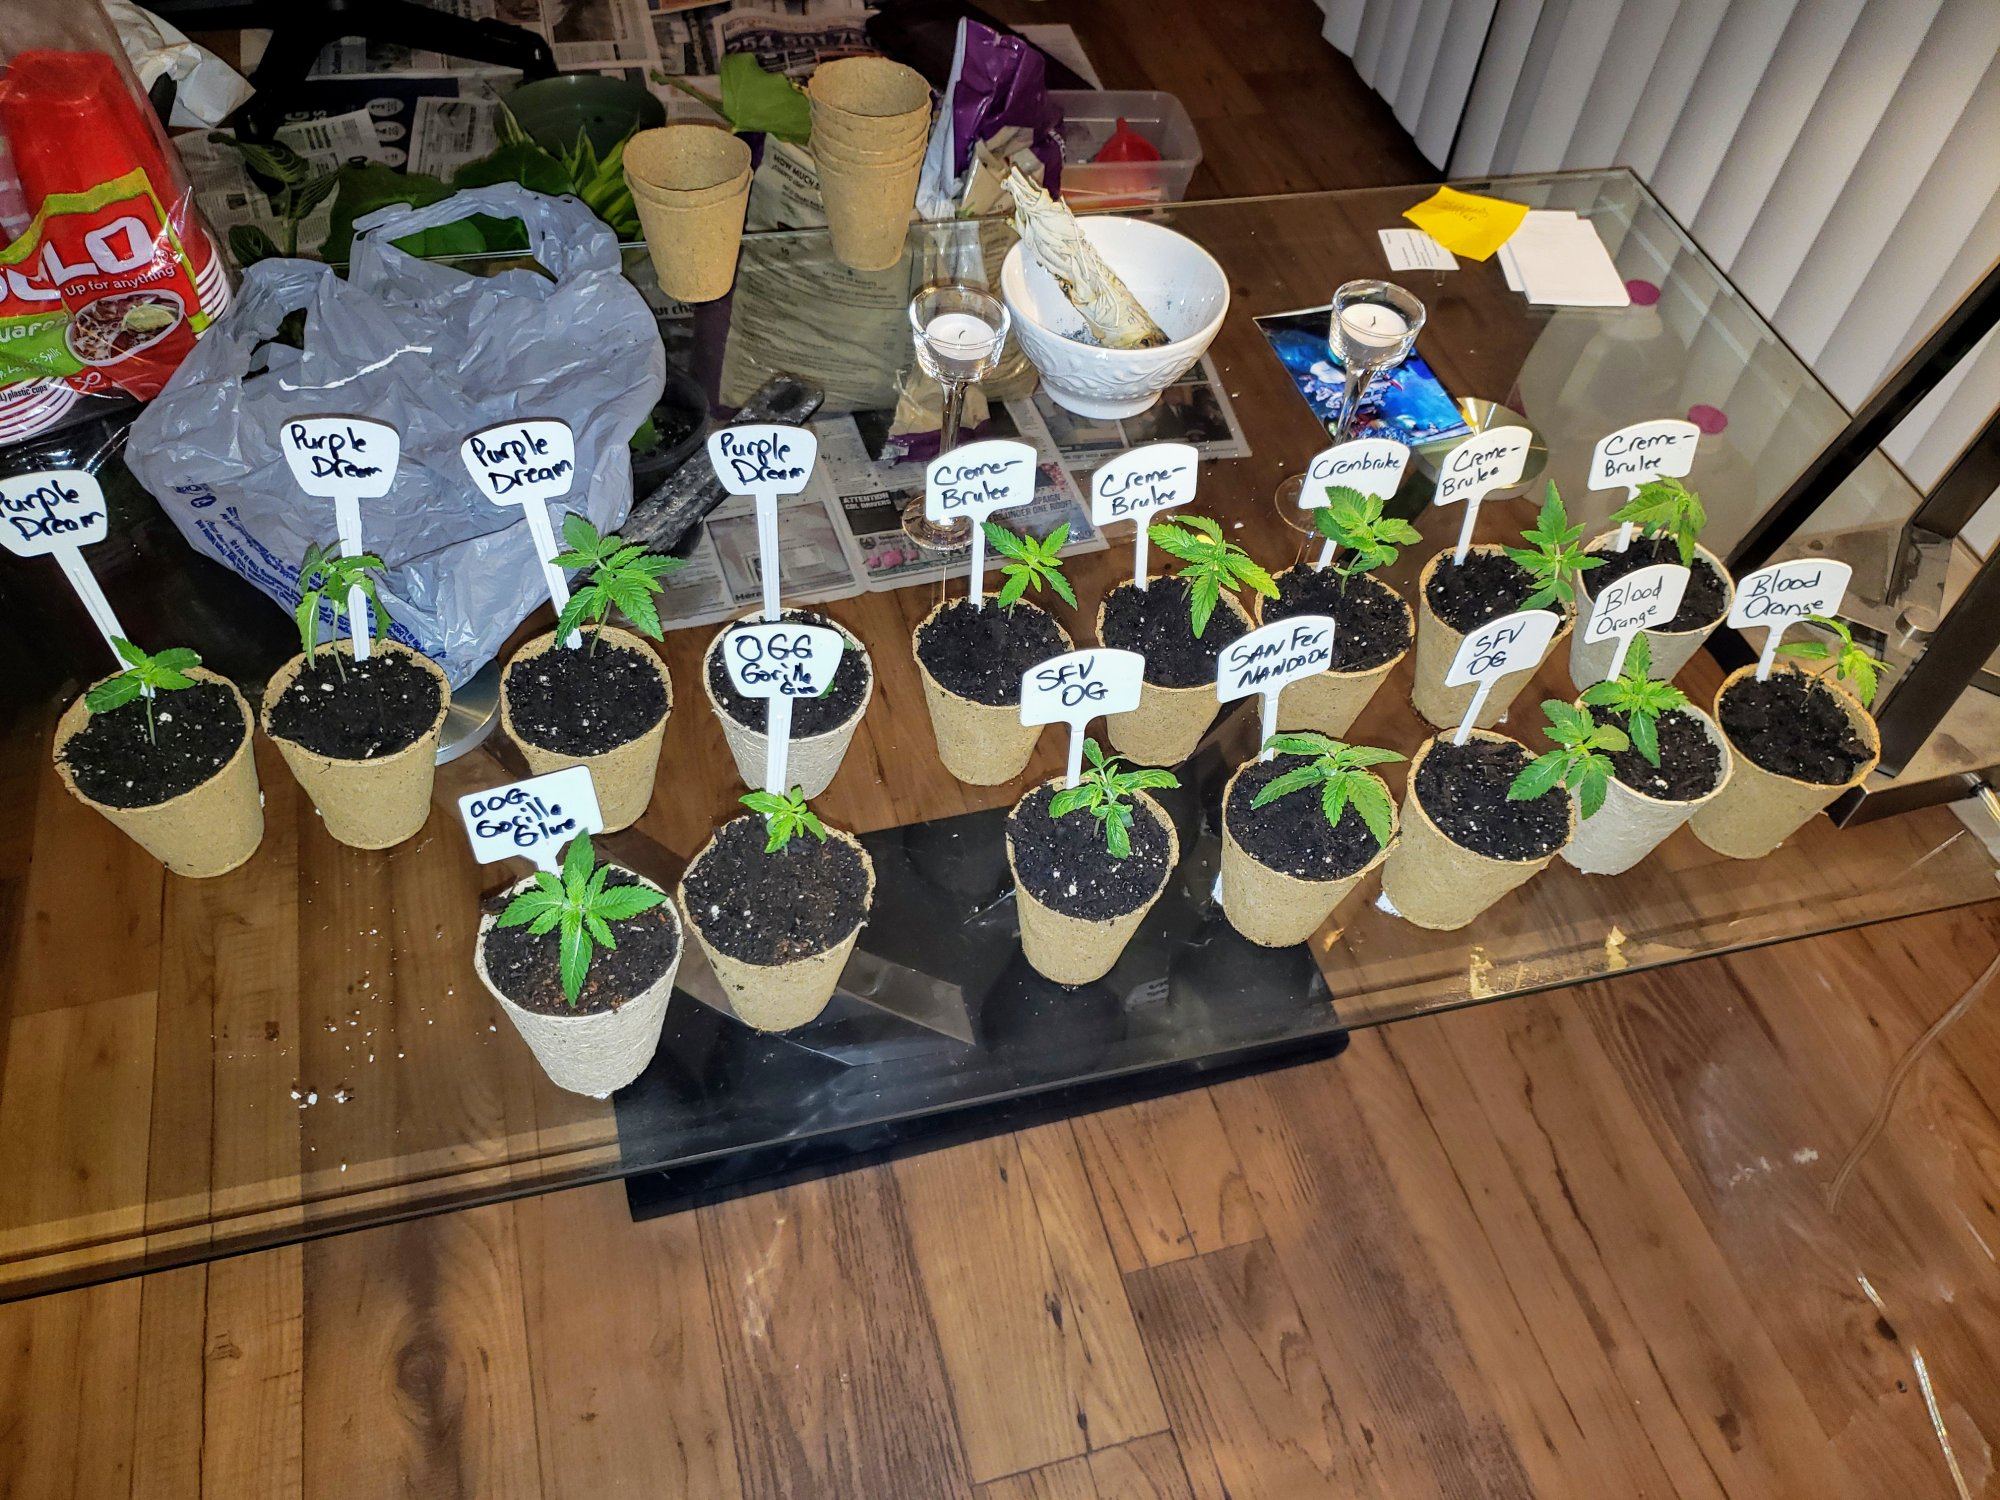 First indoor grow op